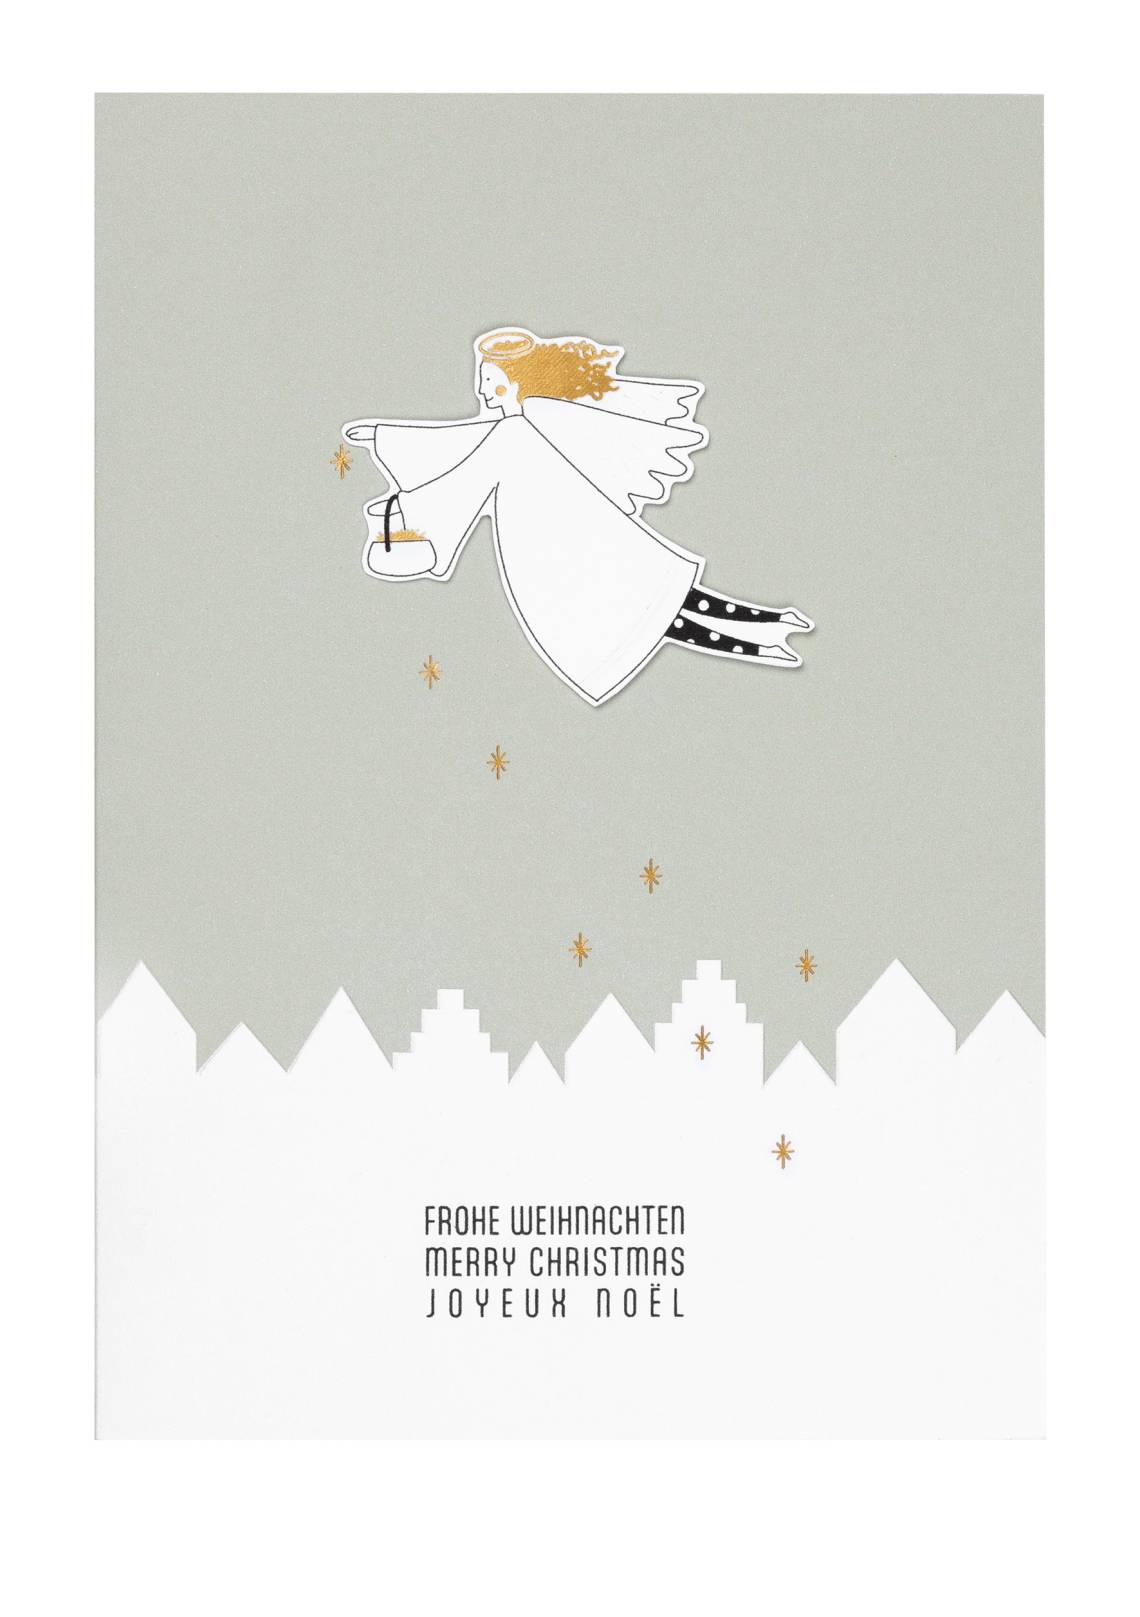 räder - Grußkarte - Fliegender Engel - Frohe Weihnachten, 3-sprachig